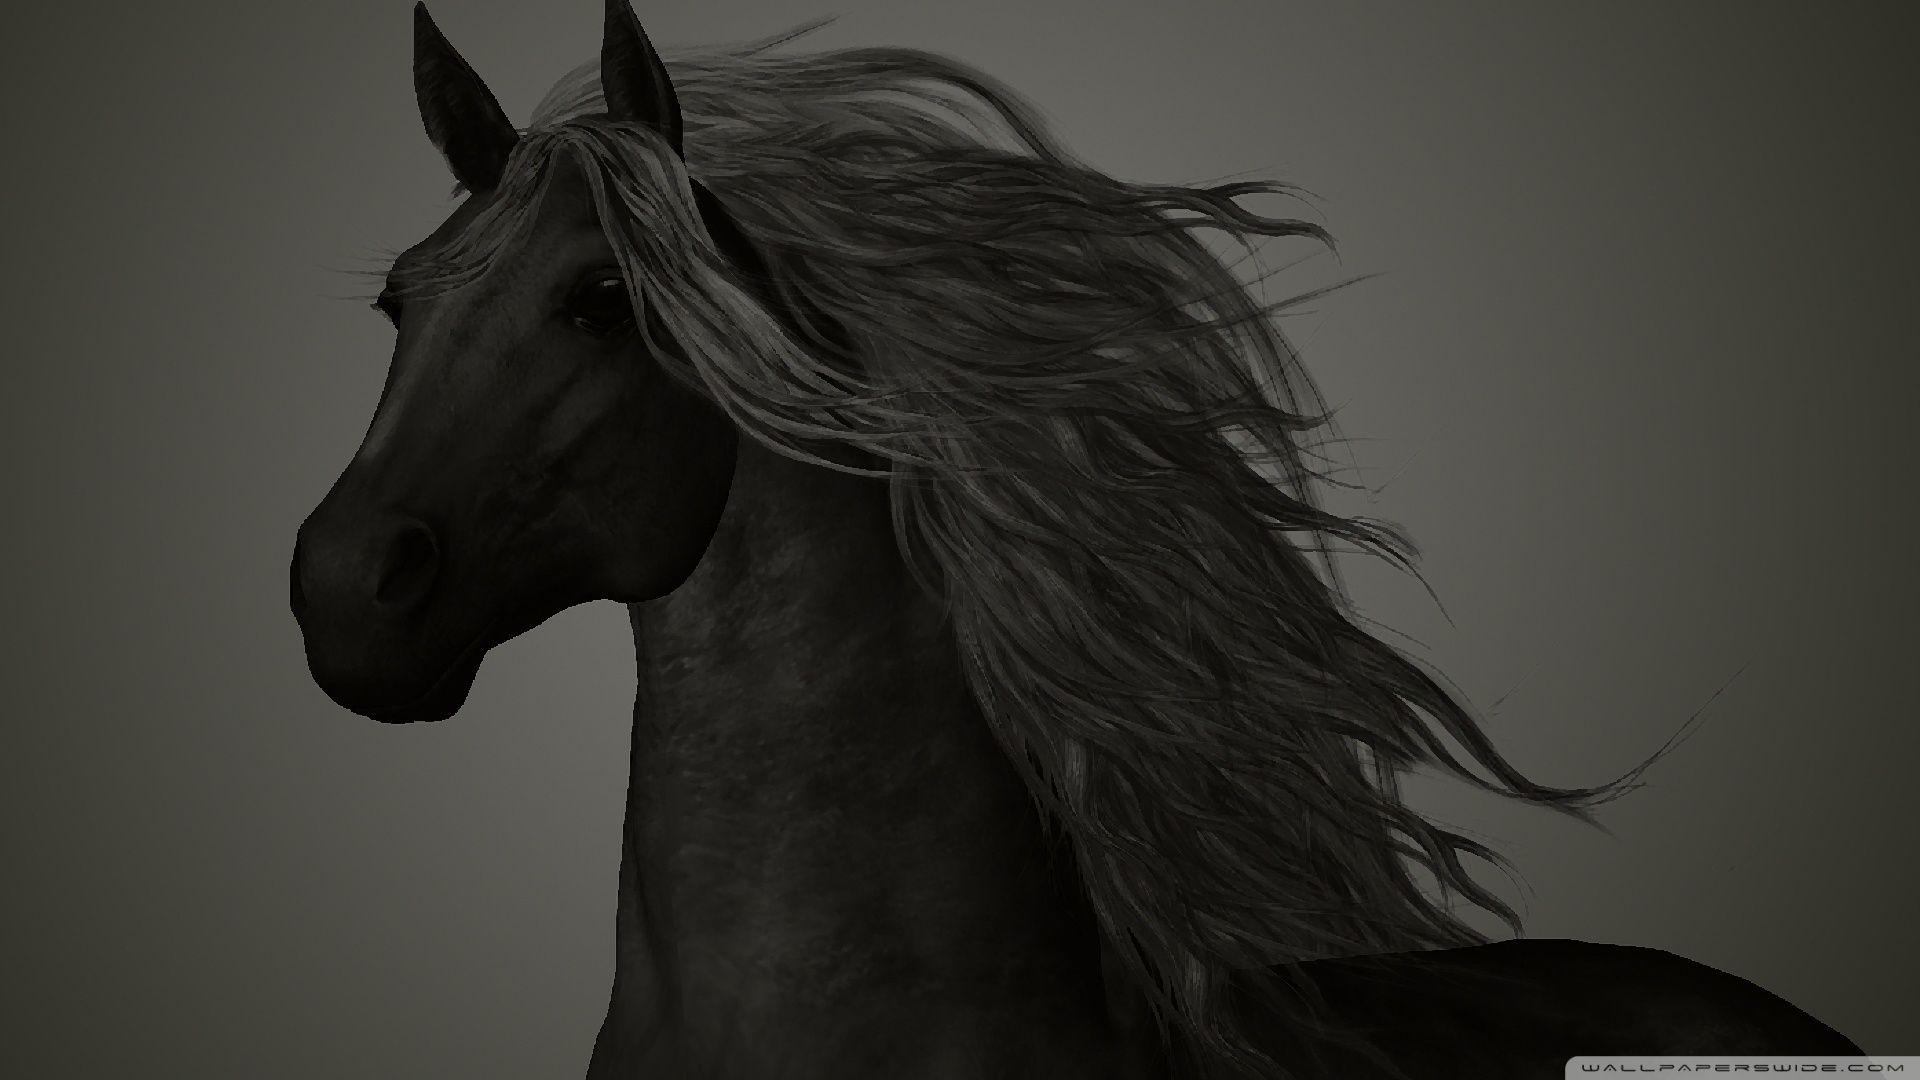 The Black Horse HD desktop wallpaper, Widescreen, High